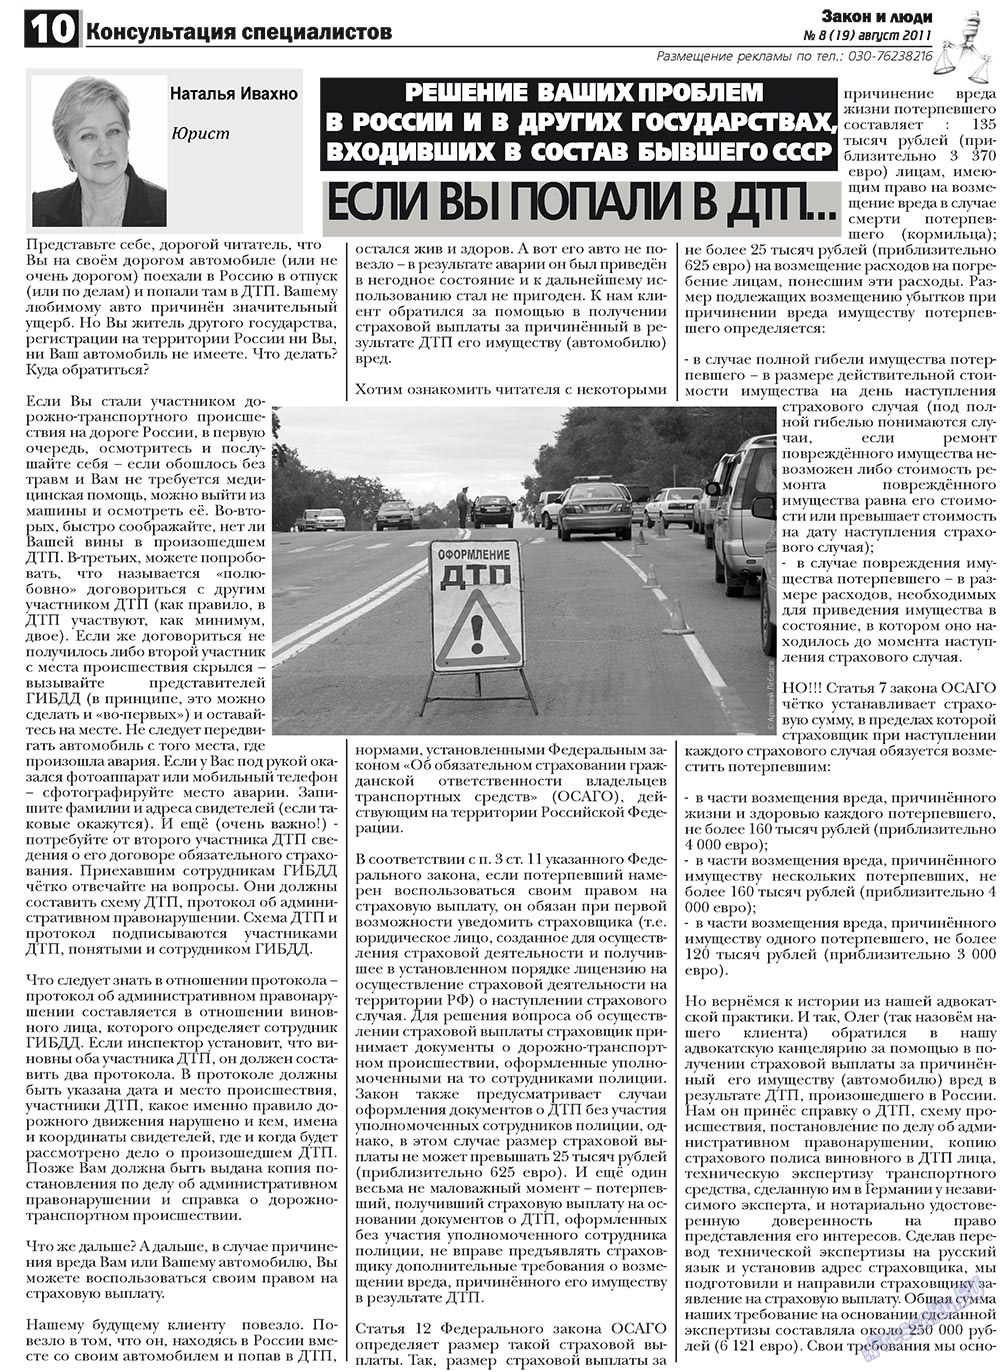 Закон и люди, газета. 2011 №8 стр.10